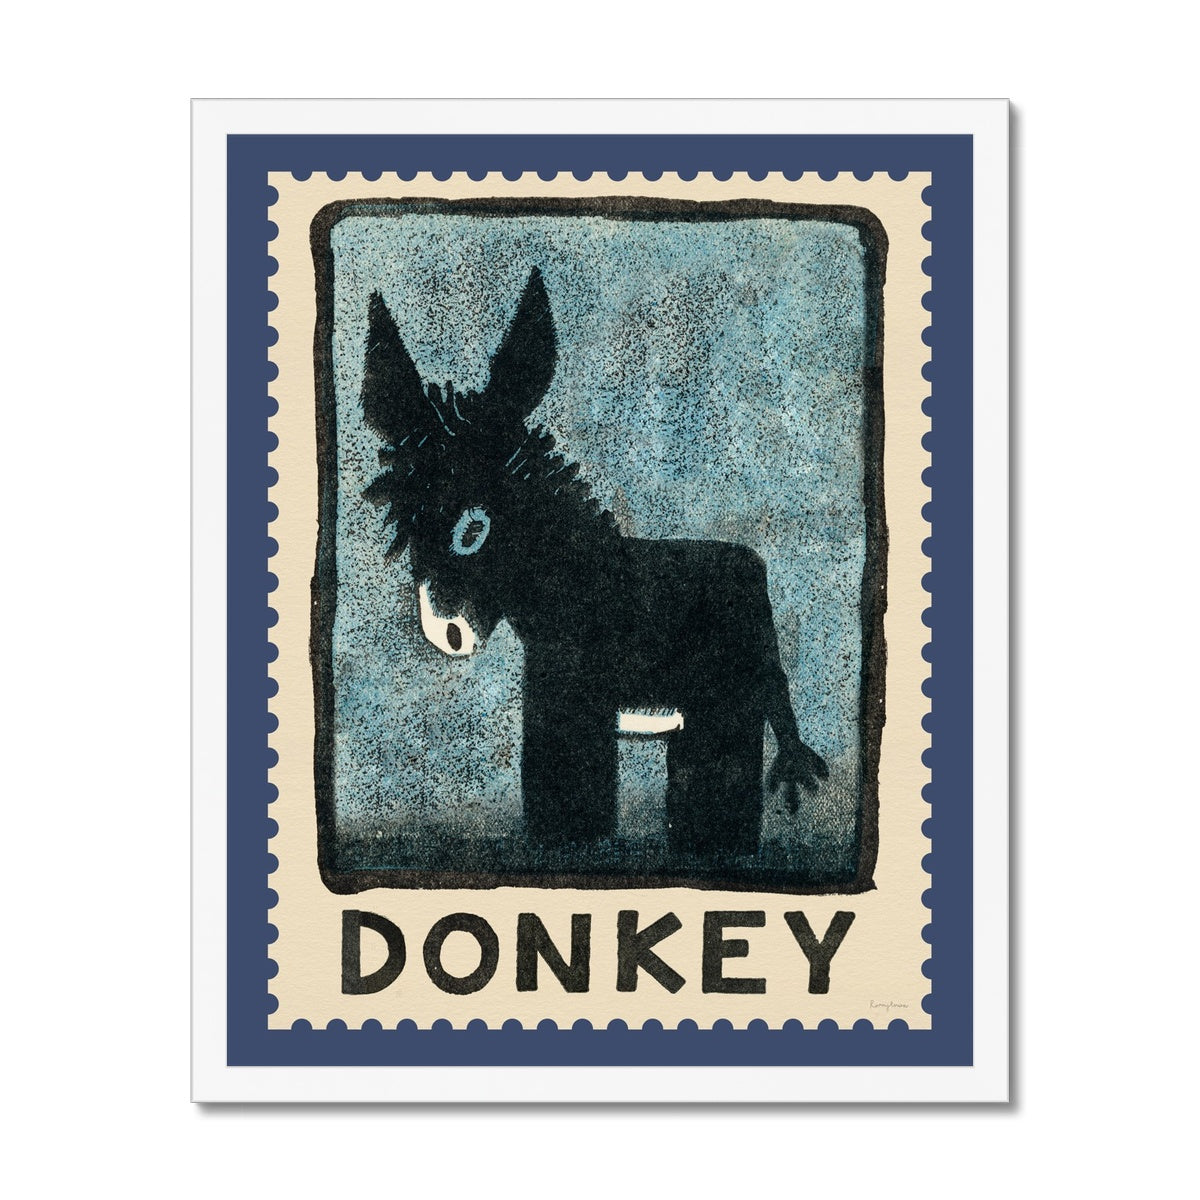 Donkey Vintage Postage Stamp Framed Fine Art Print